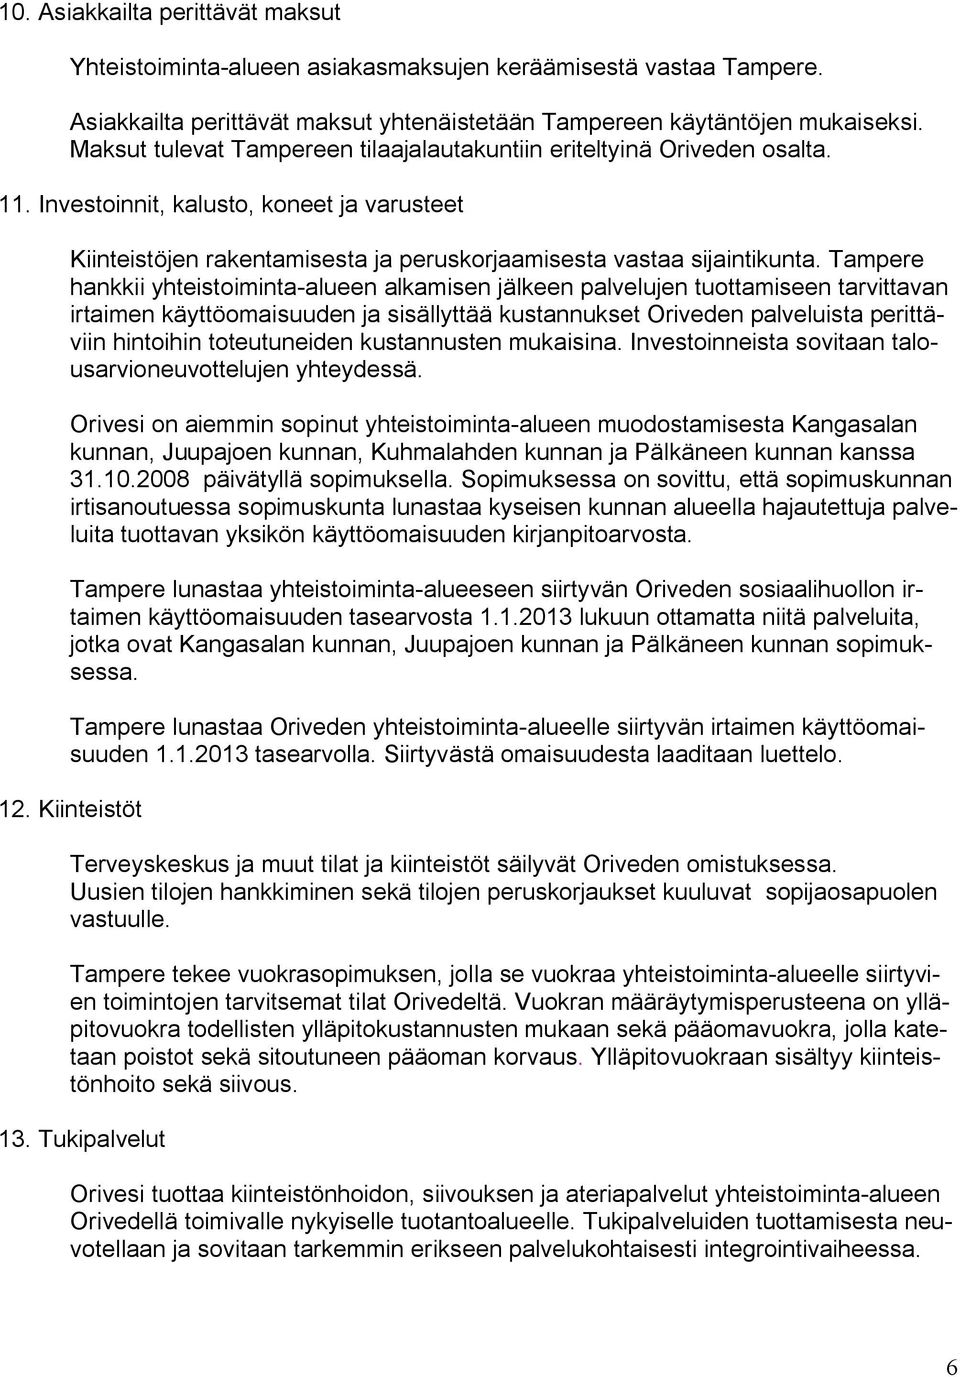 Tampere hankkii yhteistoiminta alueen alkamisen jälkeen palvelujen tuottamiseen tarvittavan irtaimen käyttöomaisuuden ja sisällyttää kustannukset Oriveden palveluista perittäviin hintoihin